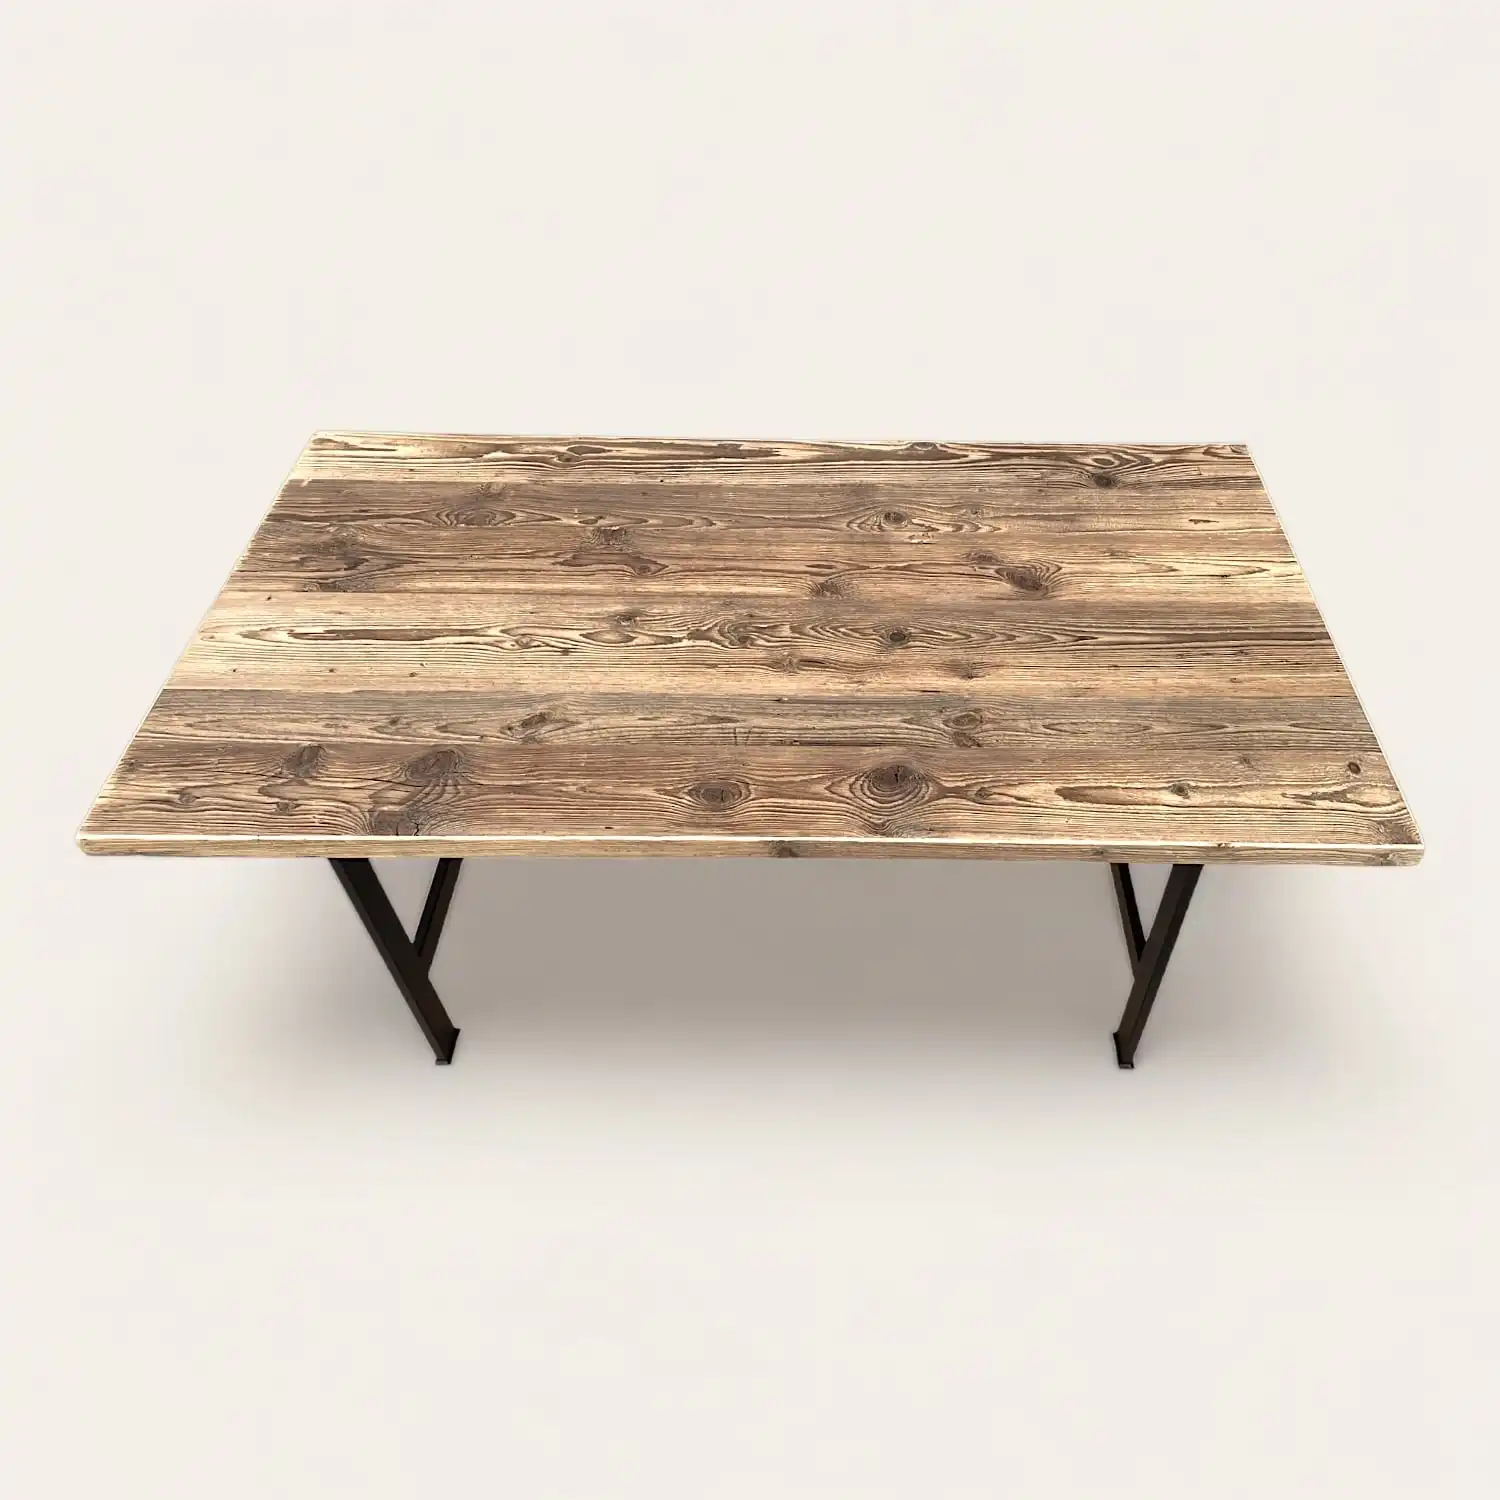  Une table rustique en bois avec des pieds noirs et un plateau en bois. 